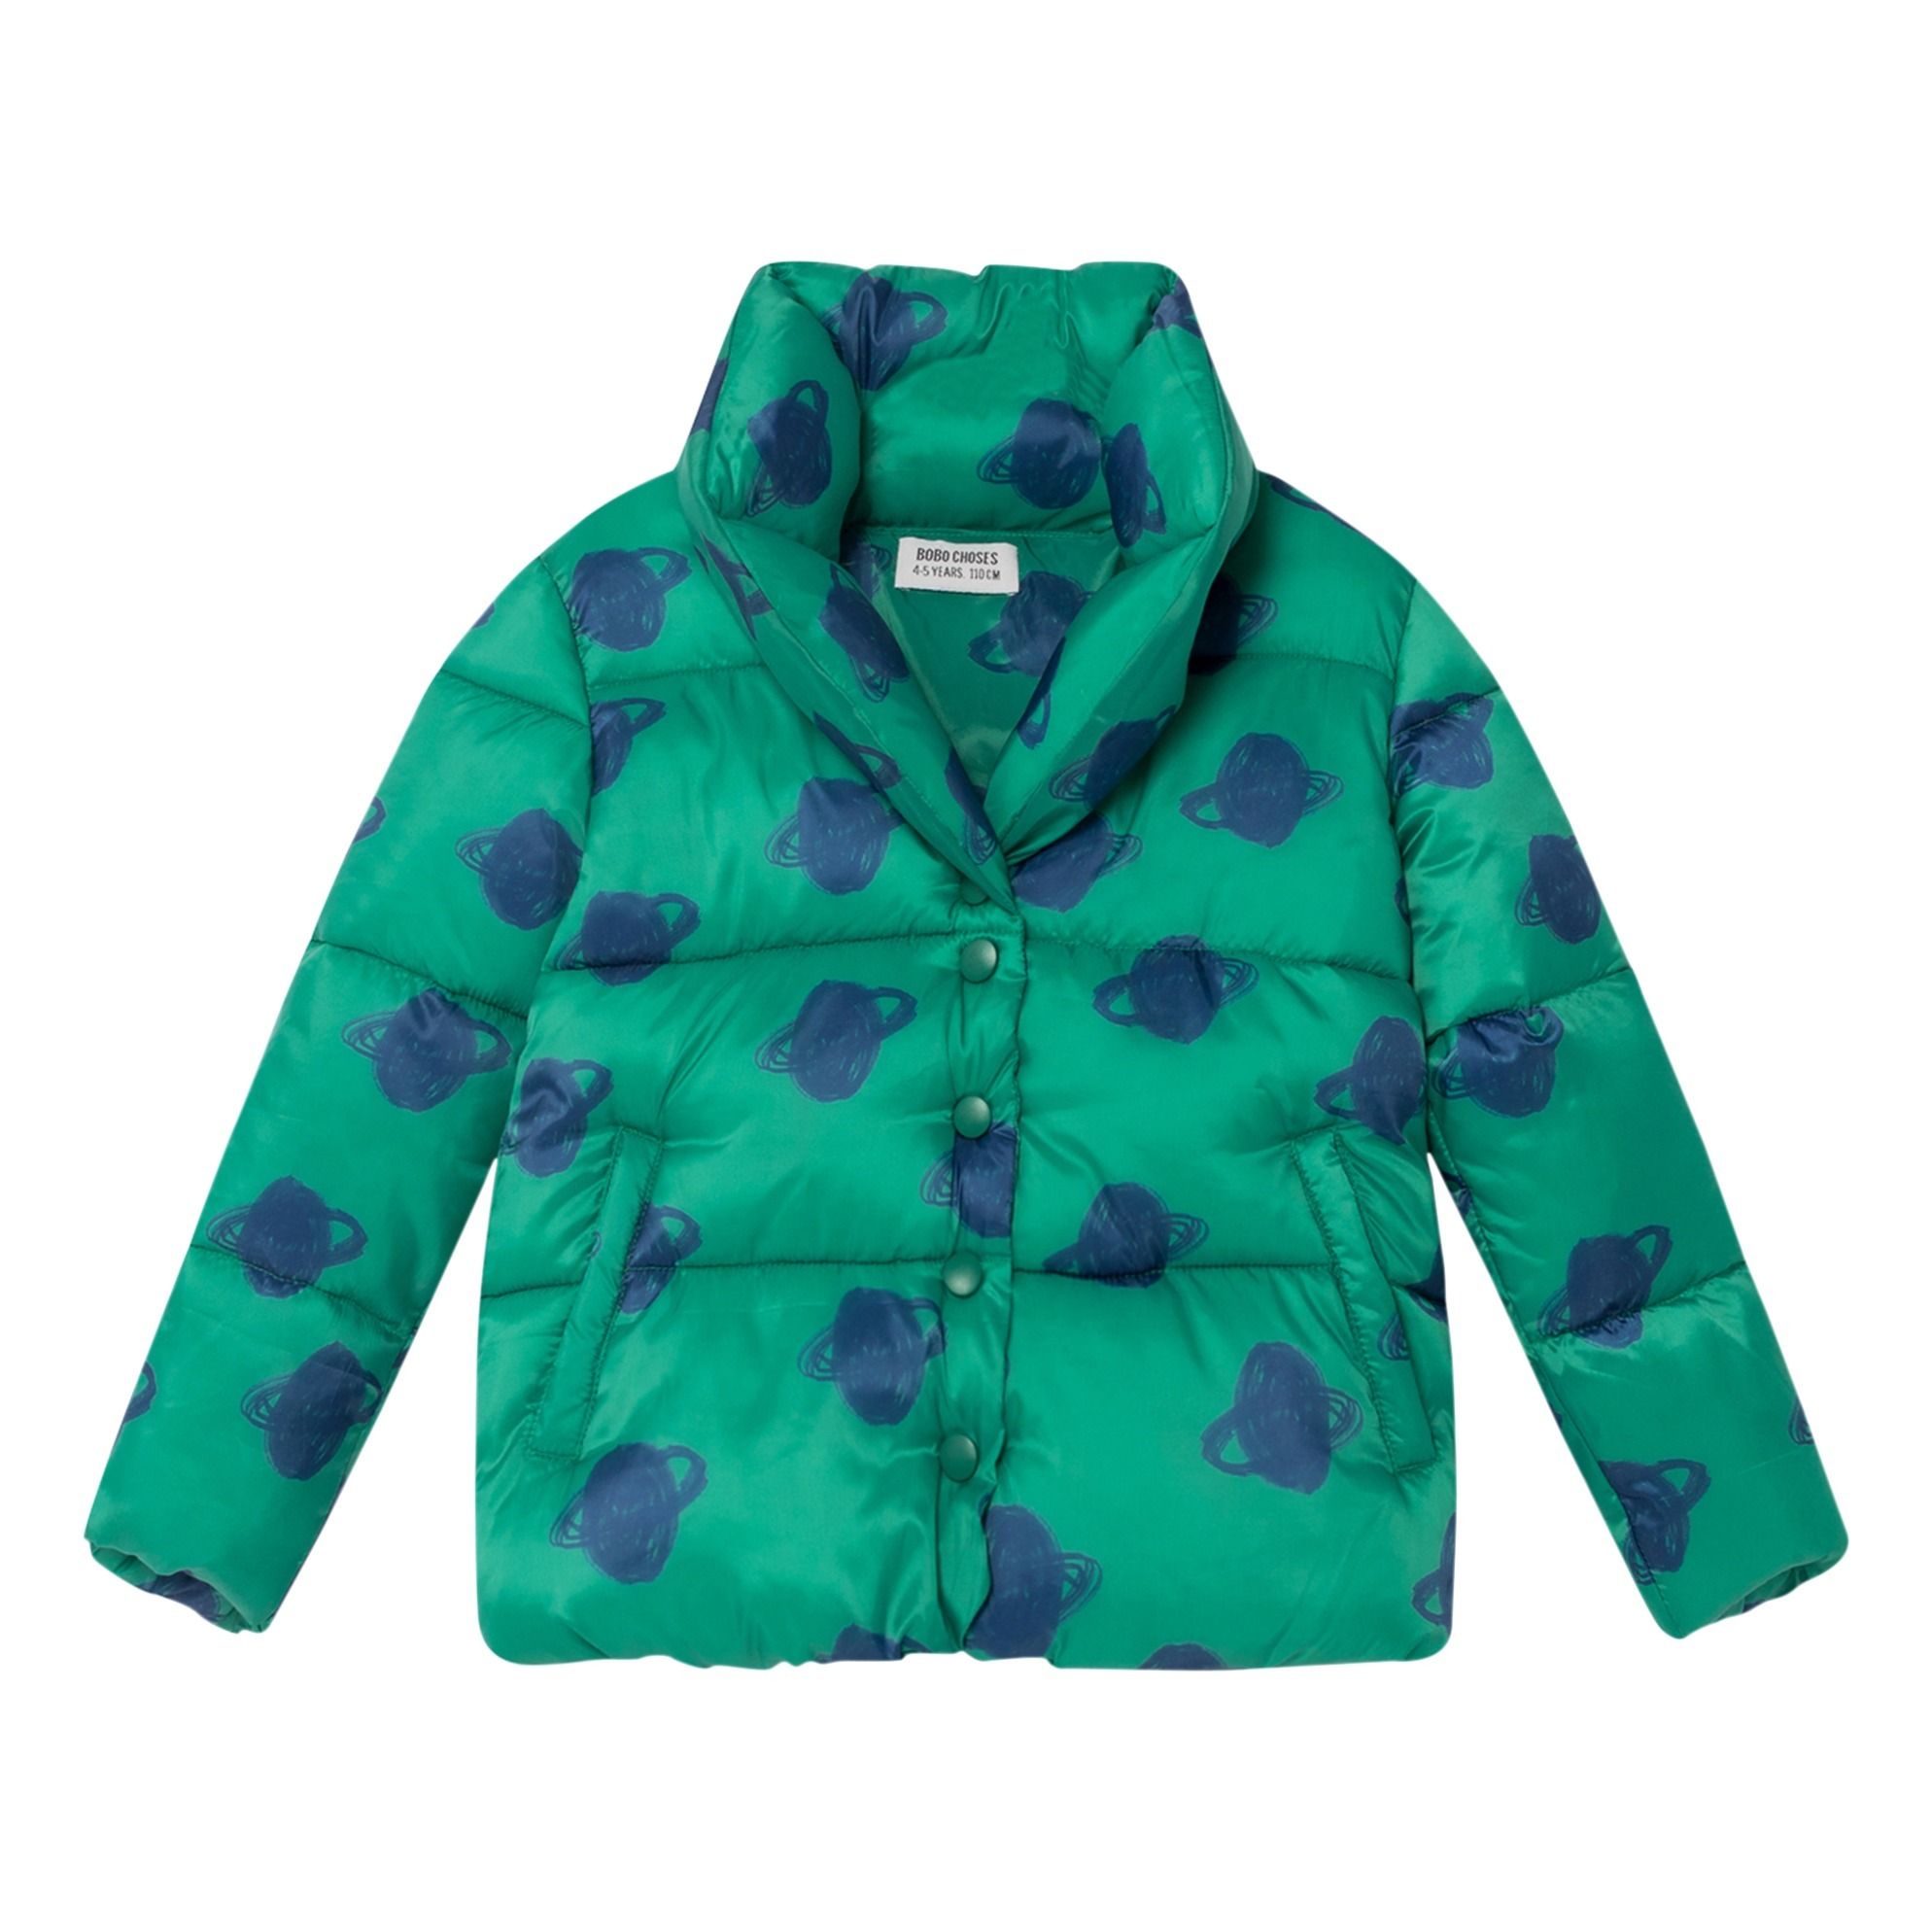 Planet Down Jacket Green Bobo Choses Fashion Children